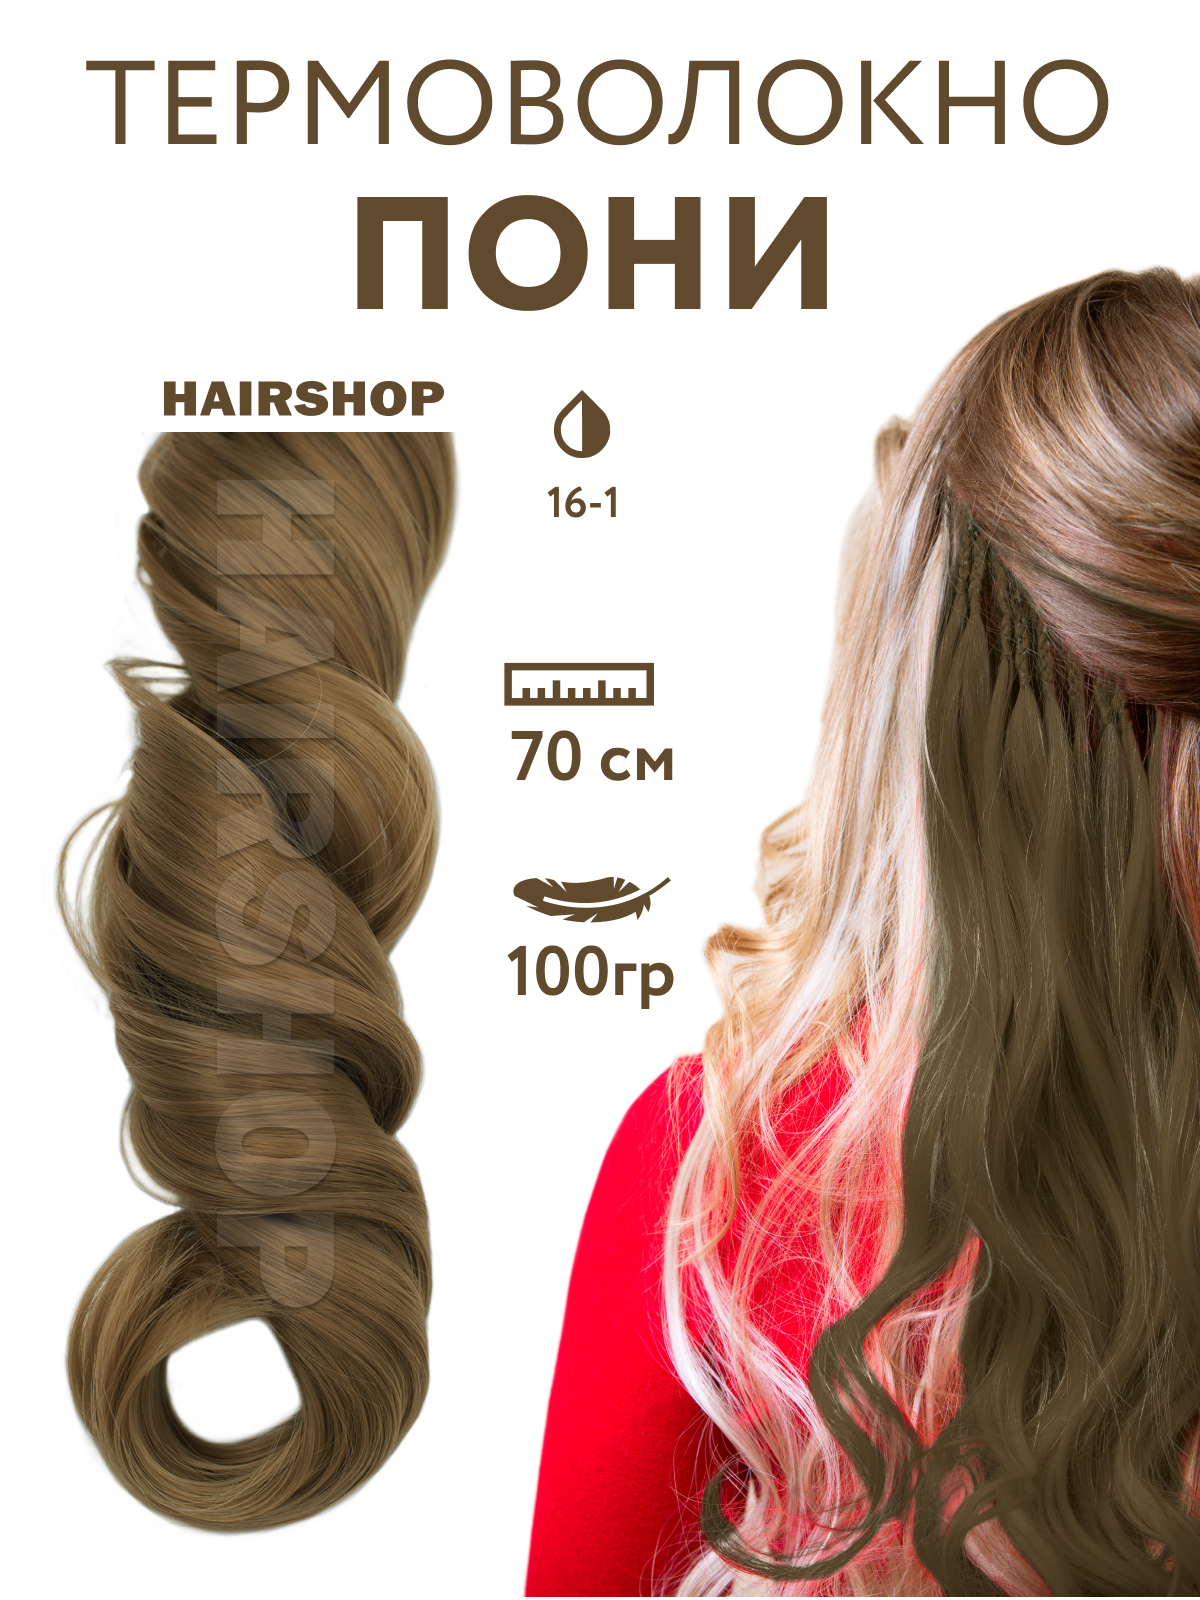 Канекалон Hairshop Пони HairUp для точечного афронаращивания 16-1 Пепельно-русый 1,4м канекалон hairshop пони hairup для точечного афронаращивания 135s красно рыжий 1 4м